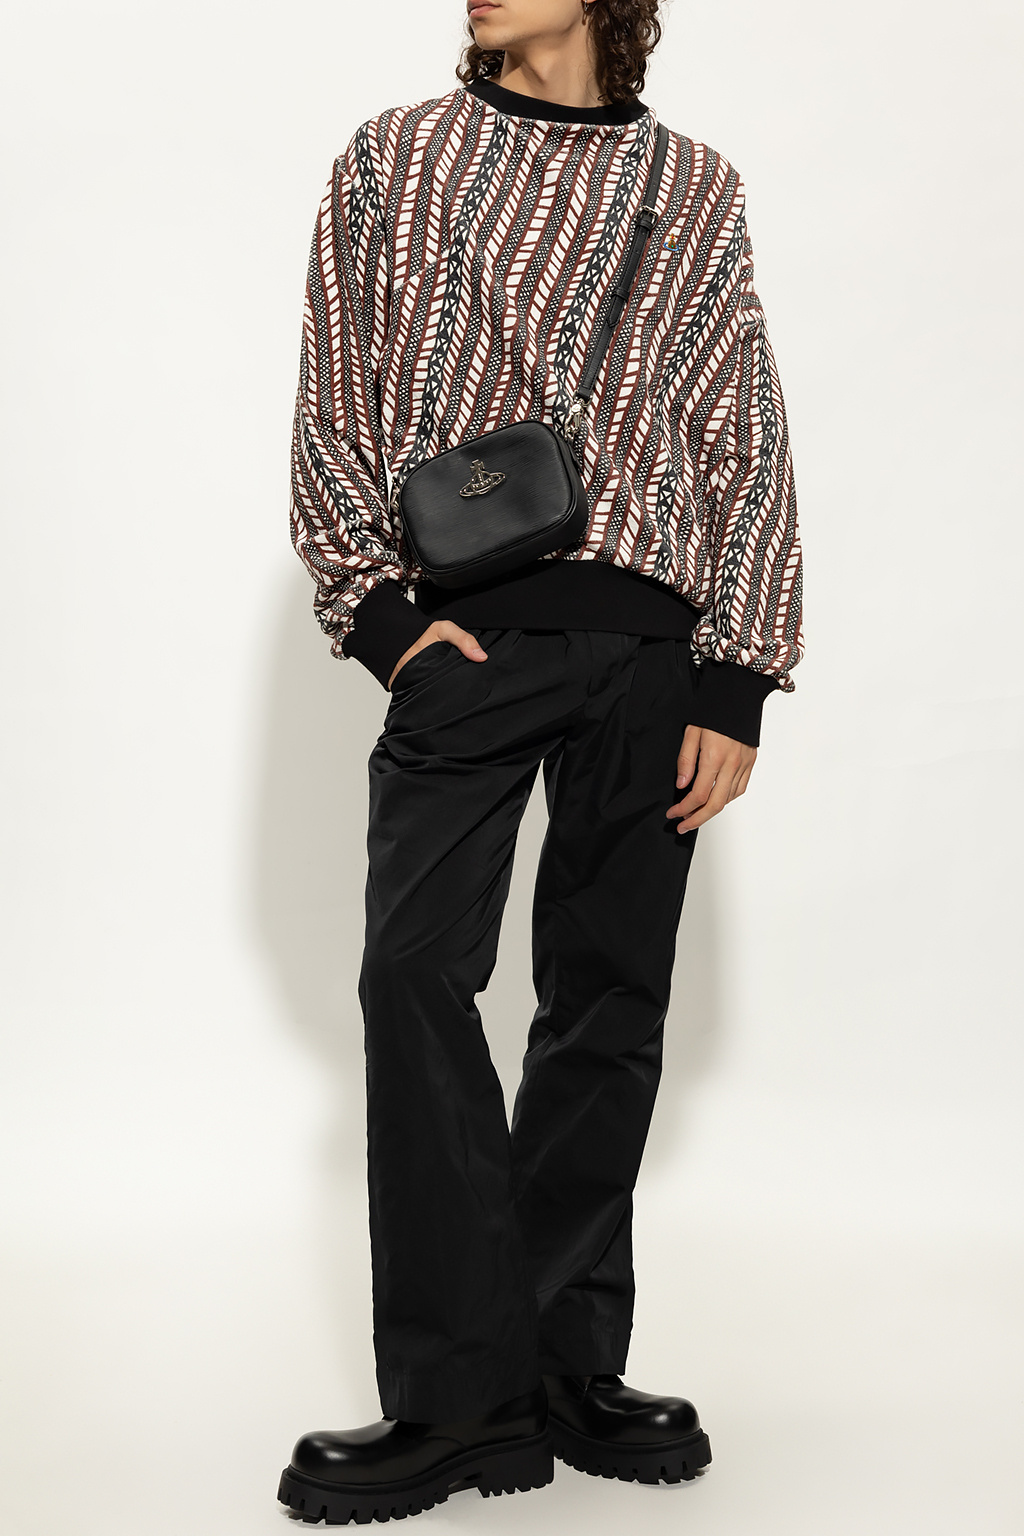 Vivienne Westwood Patterned Vertic sweatshirt in organic cotton